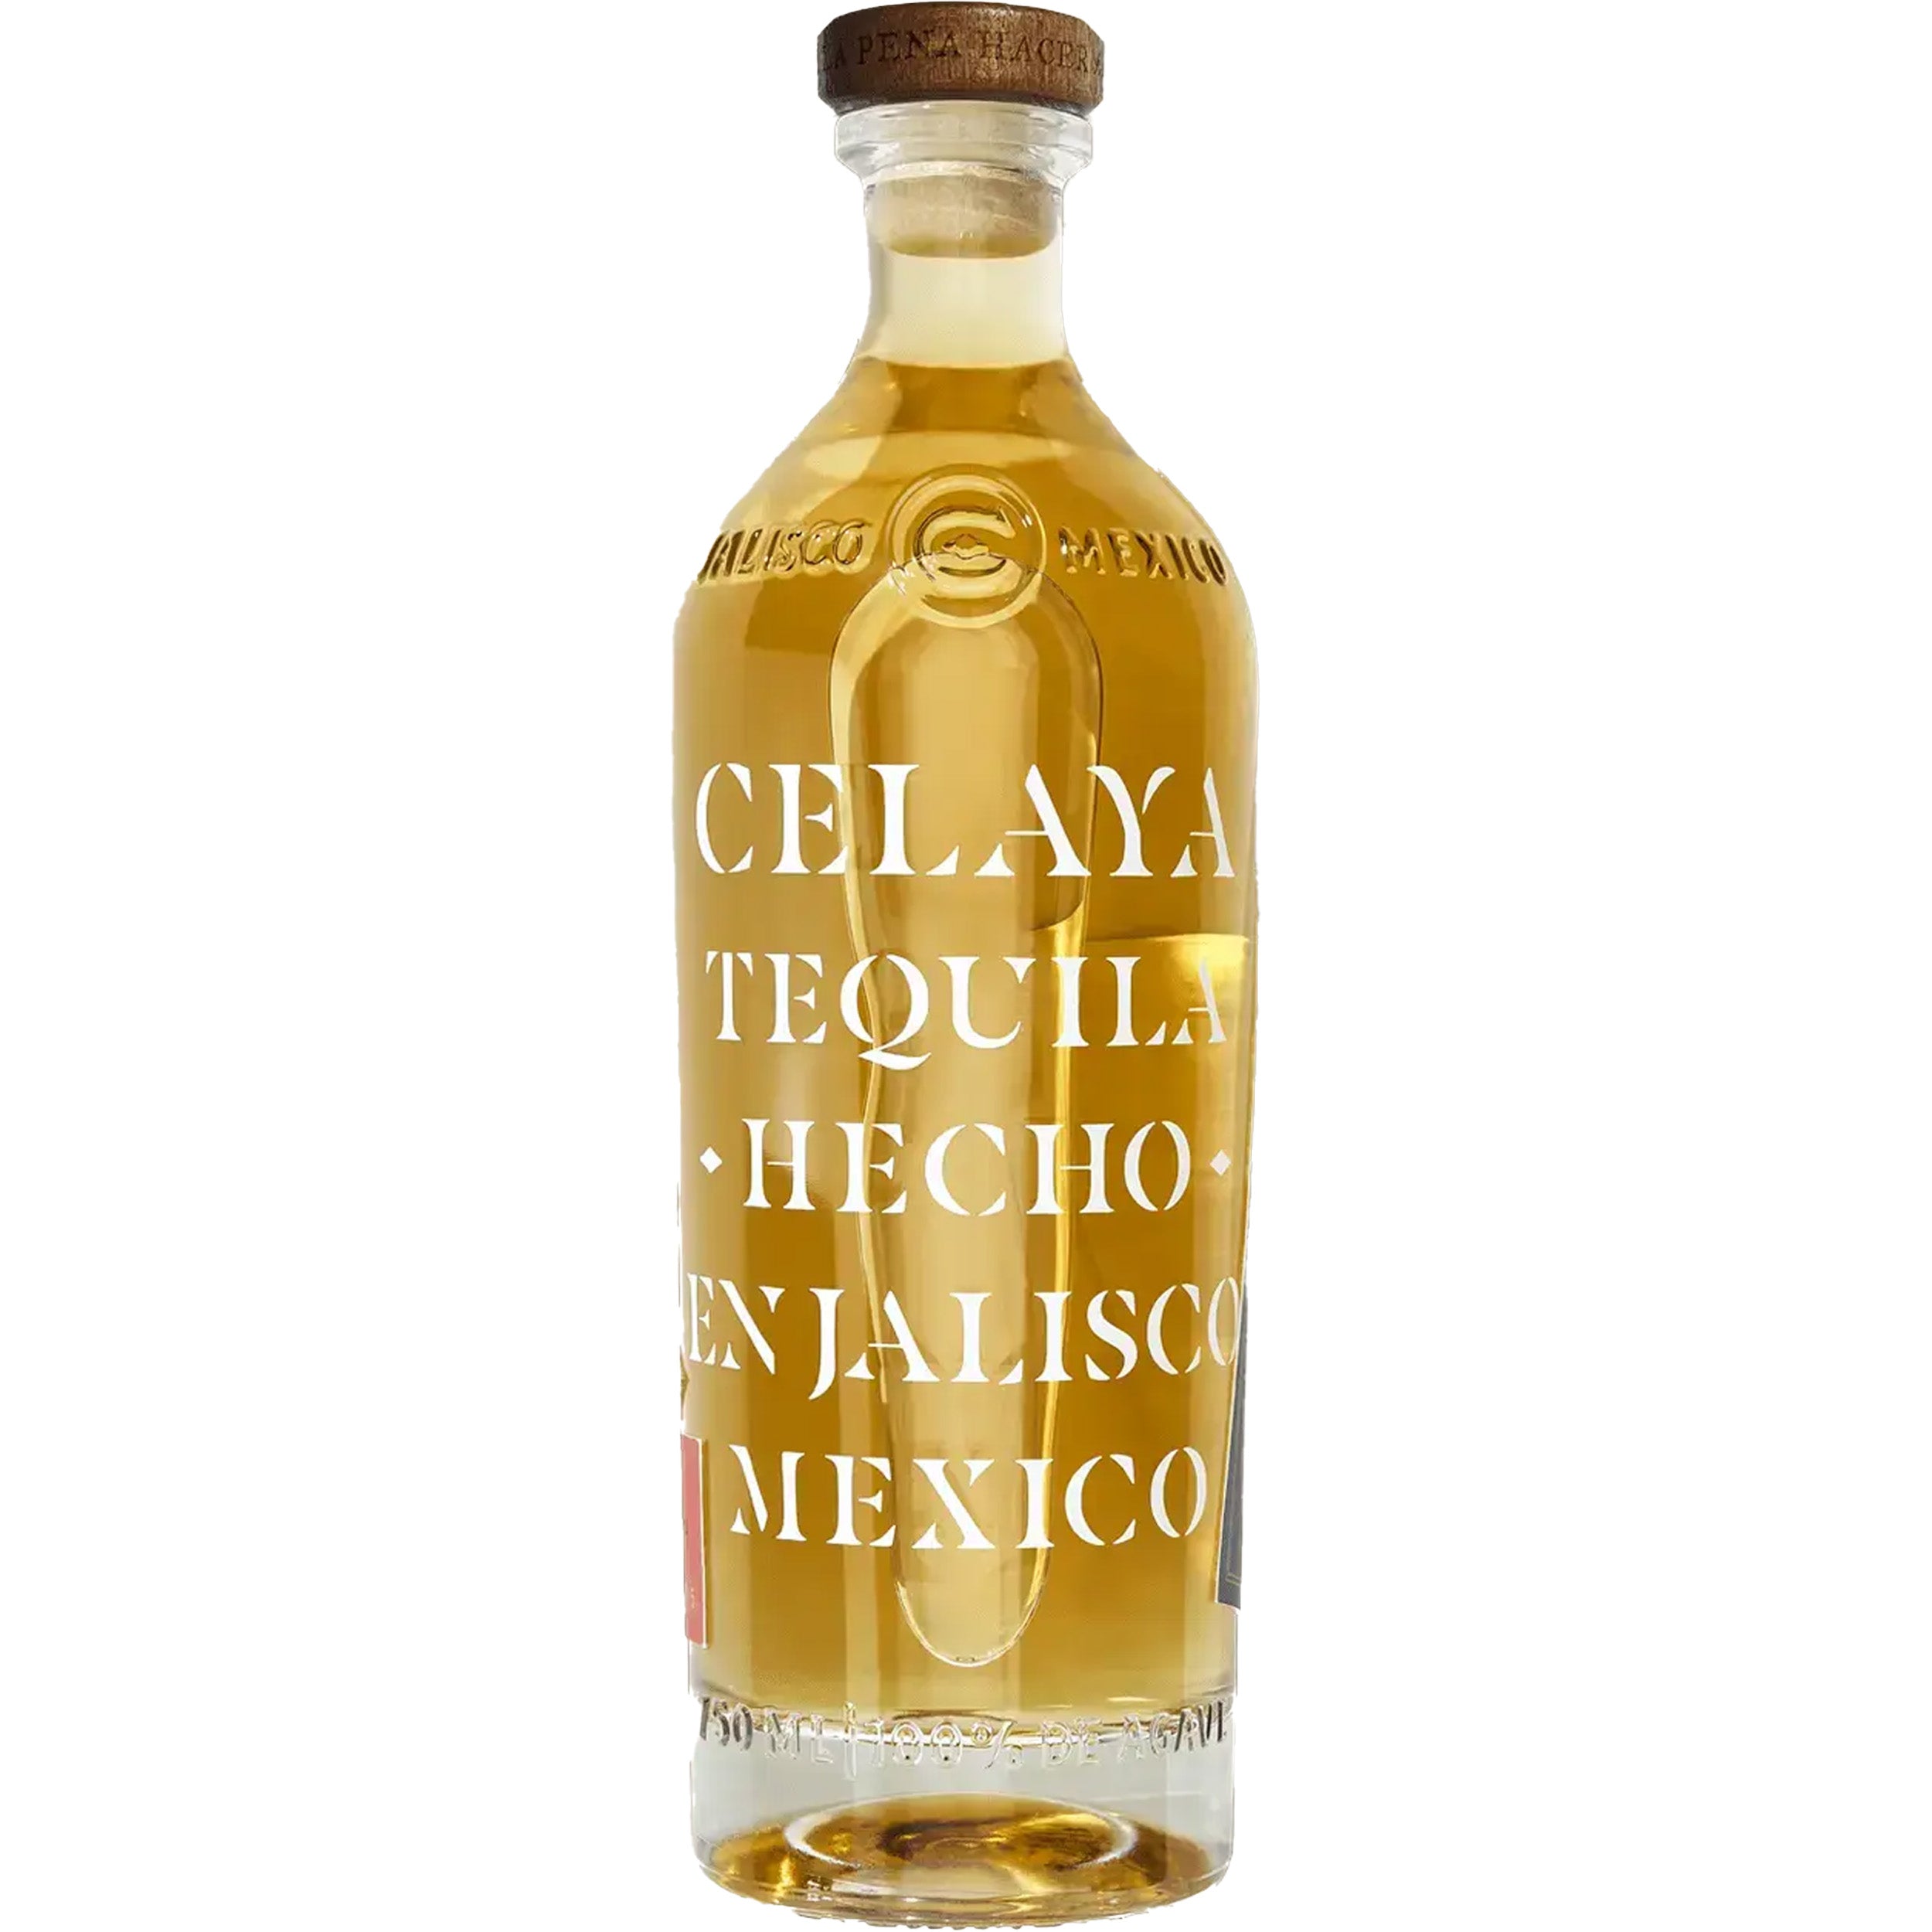 Celaya Anejo Tequila